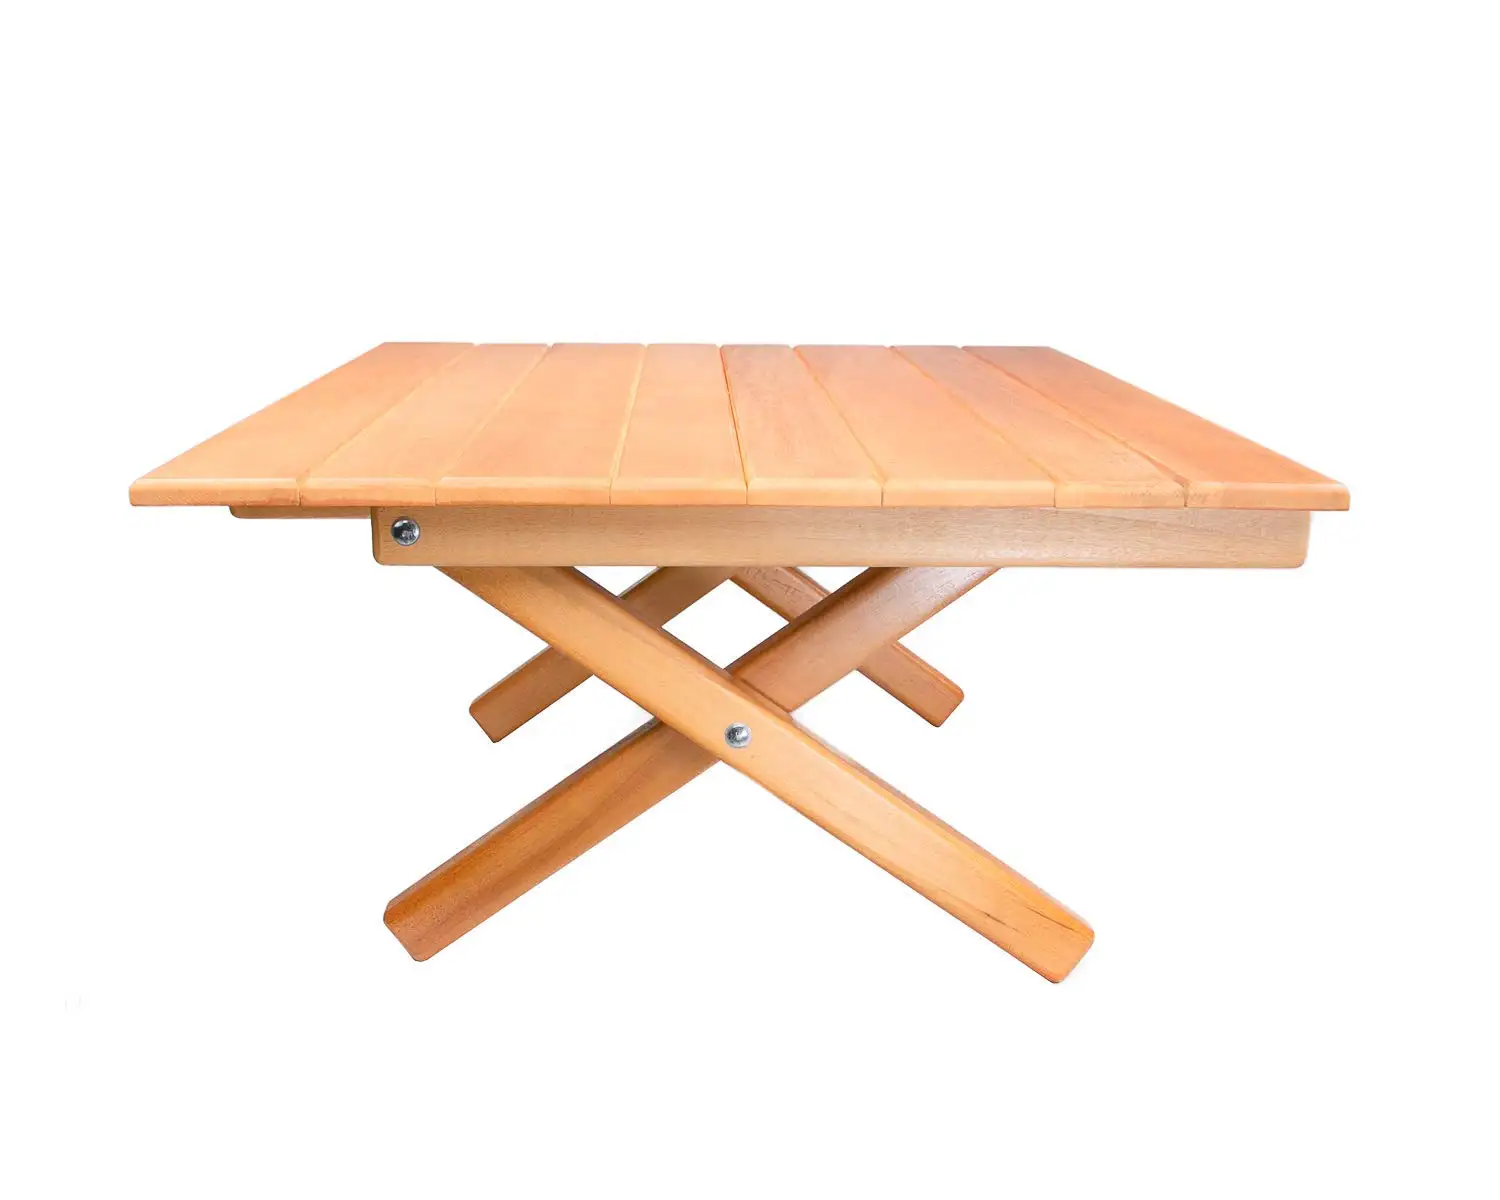 Tabela de acampamento ao ar livre, mesa de madeira portátil, piquenique, fácil de configurar